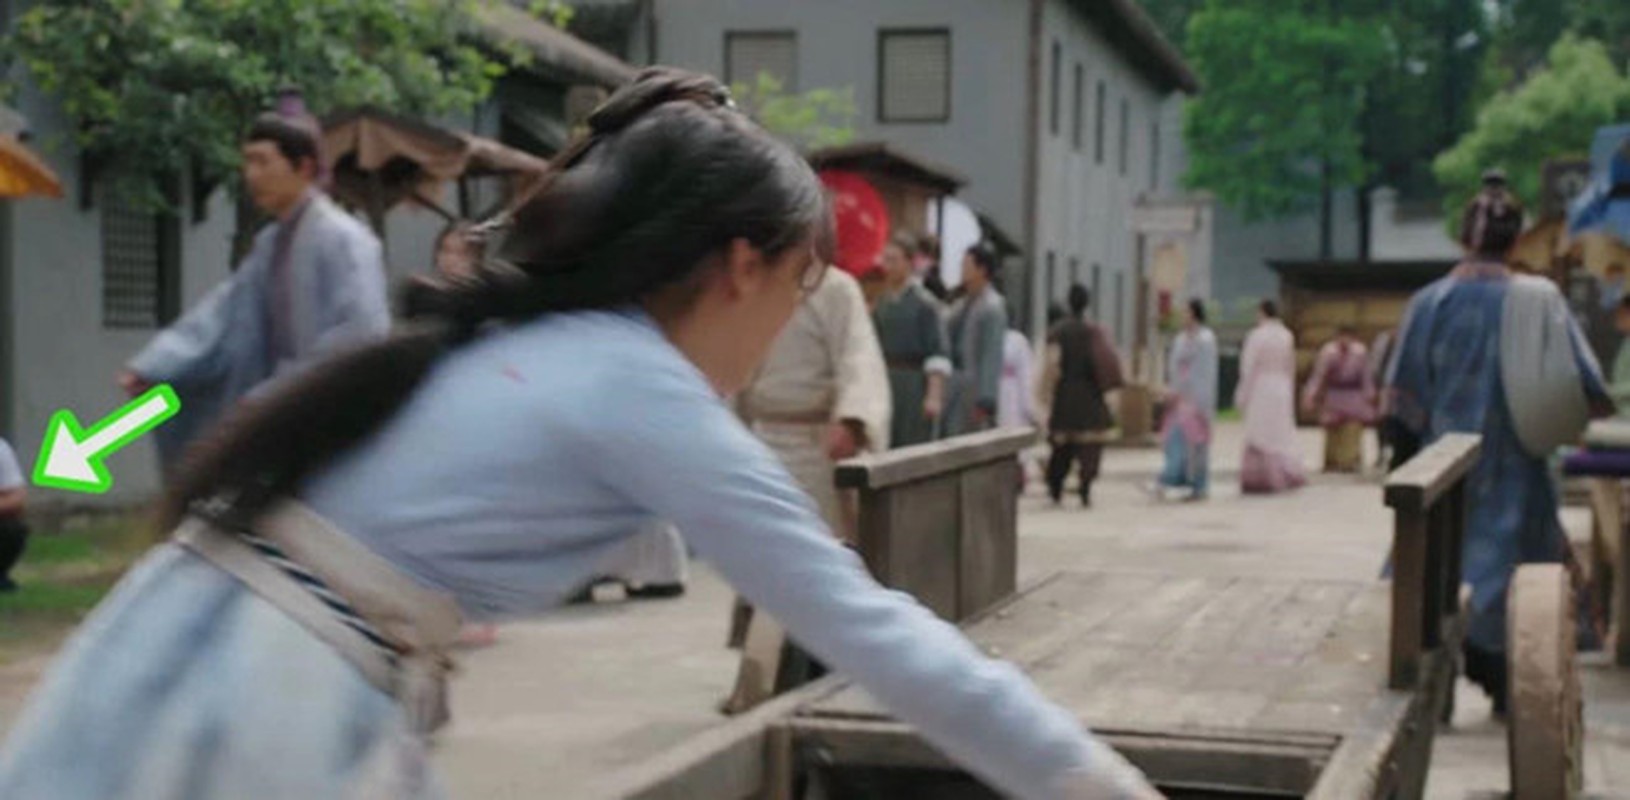 Loi gian doi va ngheo nan trong phim co trang Trung Quoc-Hinh-3